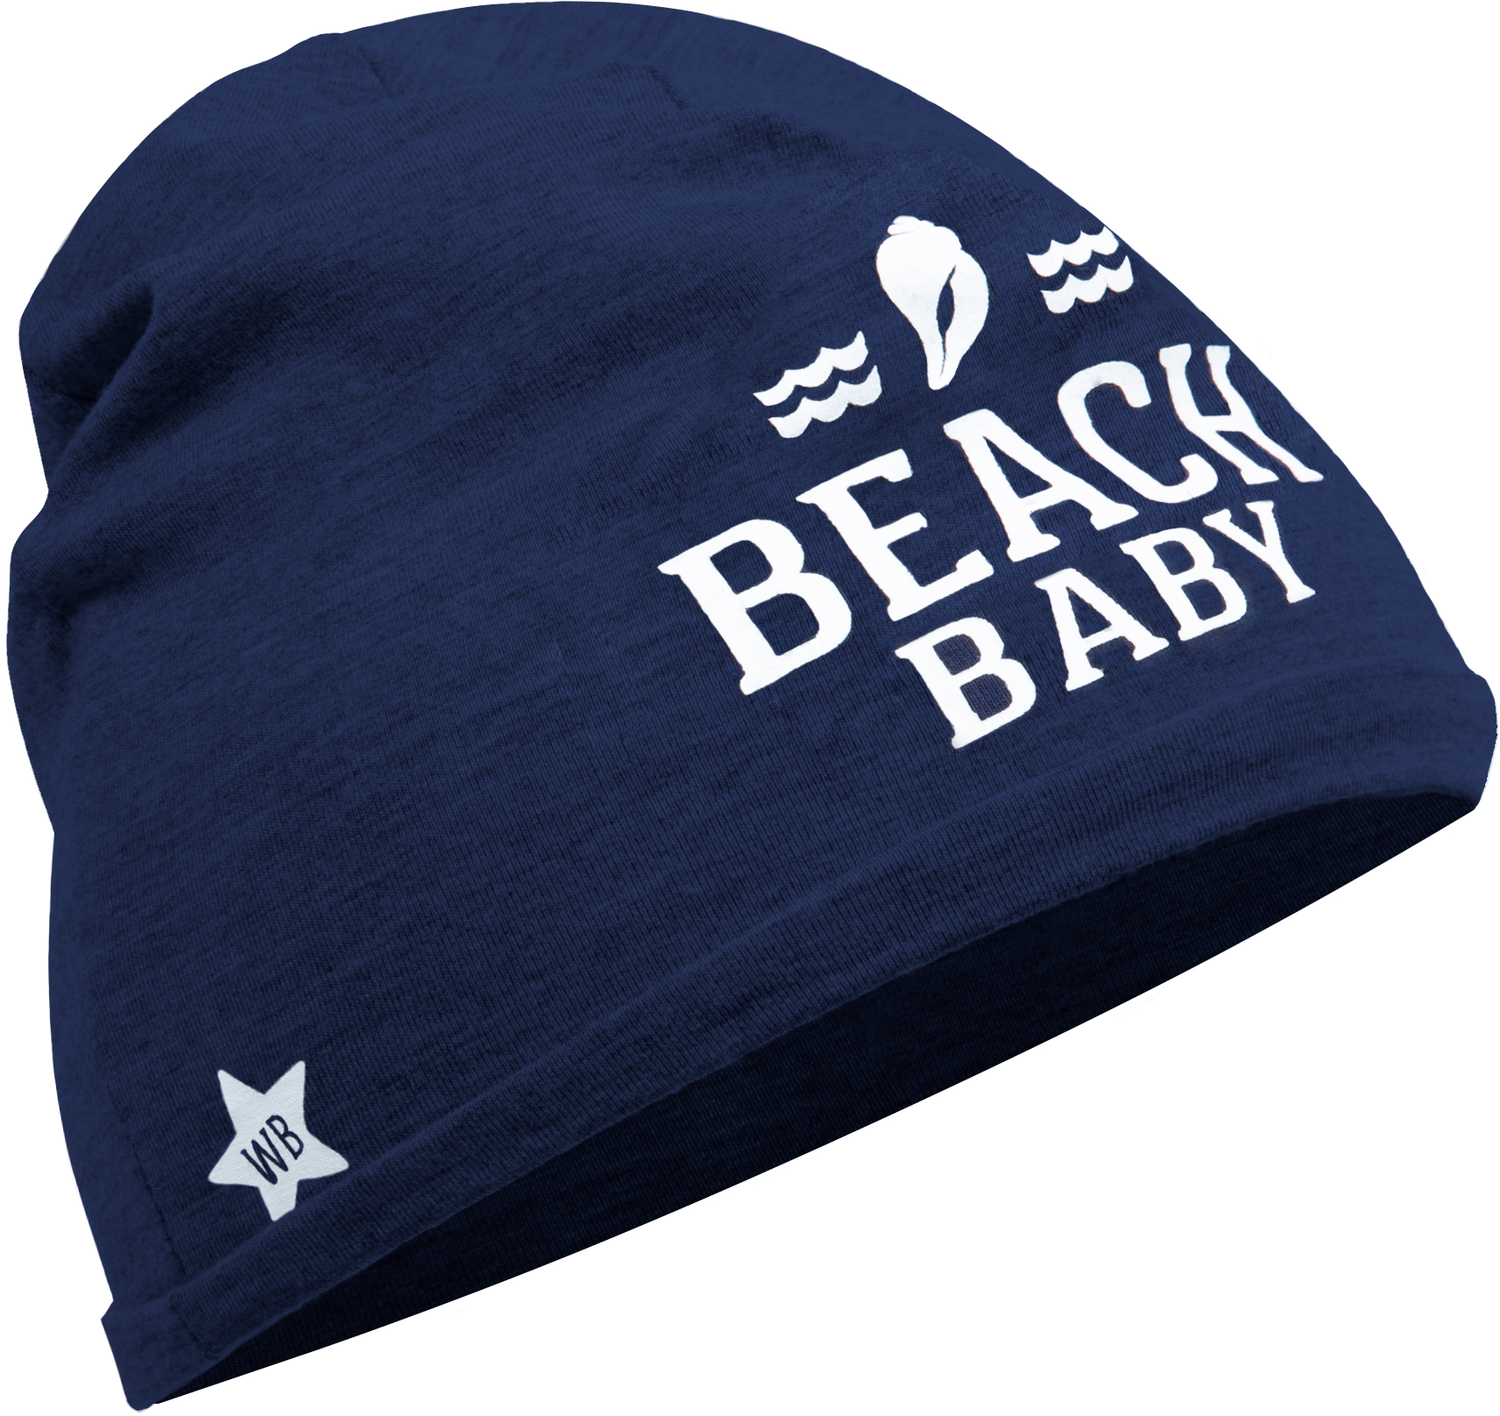 Beach by We Baby - Beach - Navy Beanie
(0-12 Months)